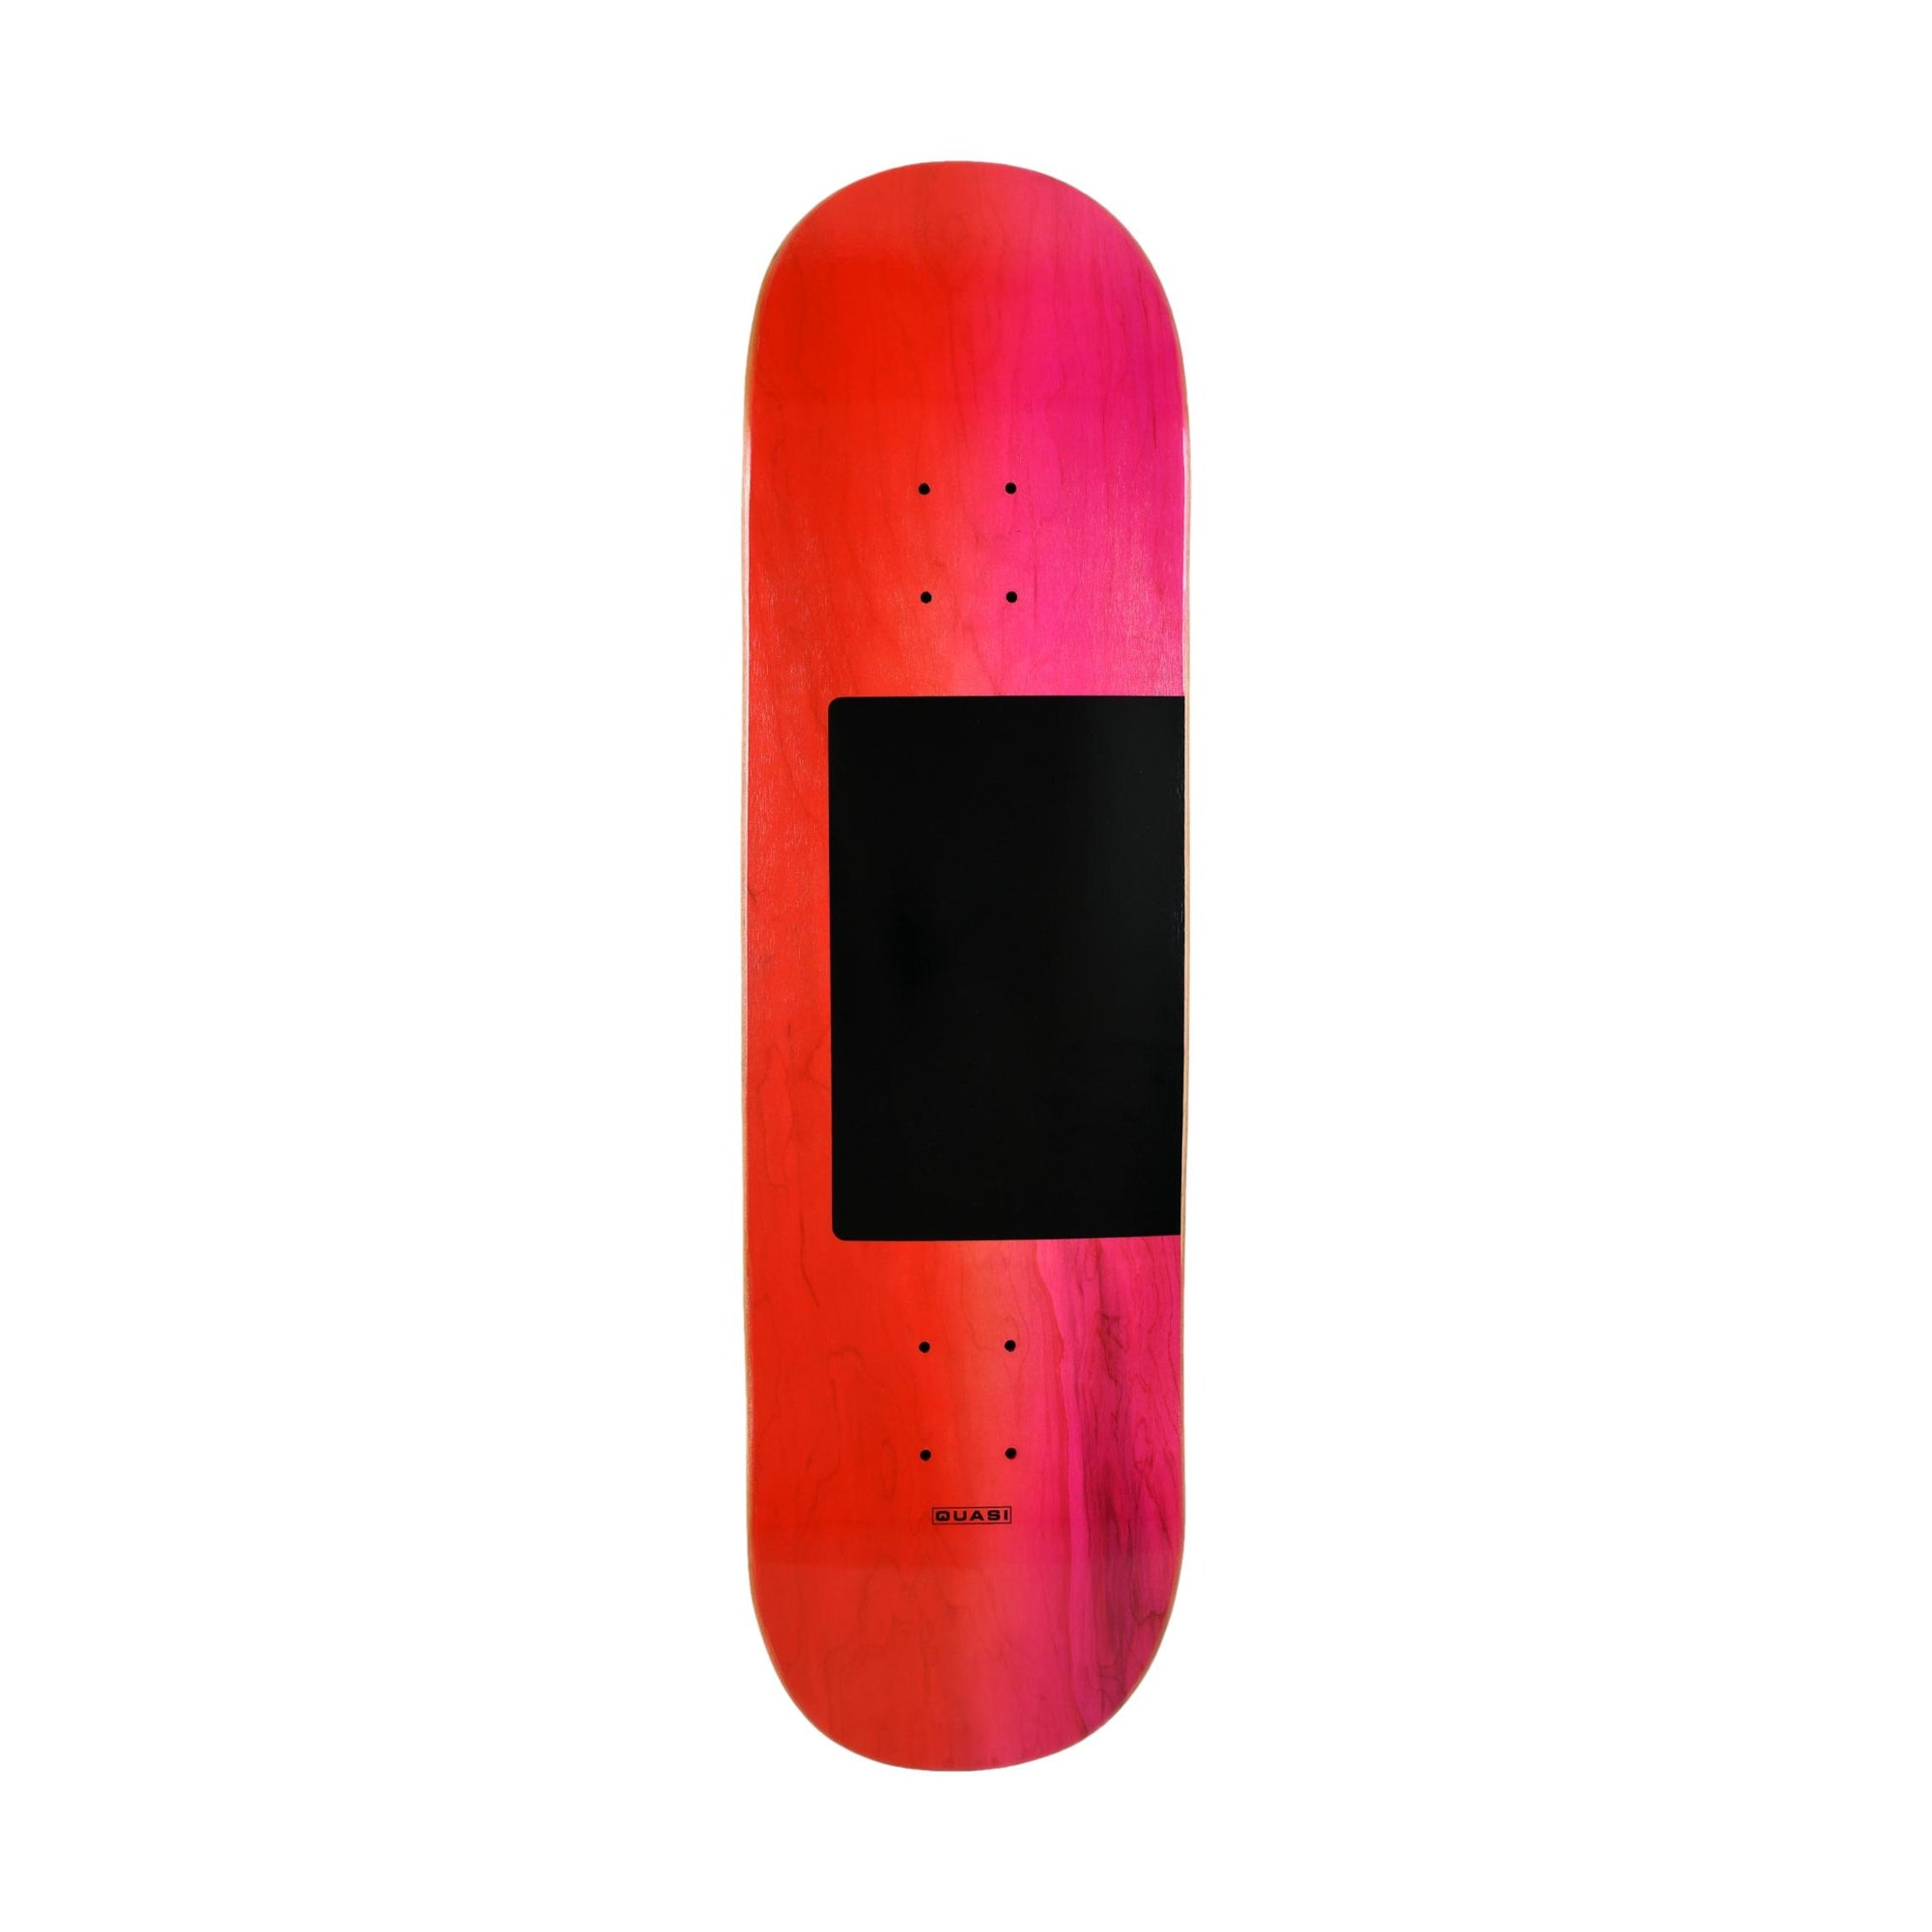 Quasi Proto Roll the Dice 8.5" Deck -  Venue Skateboards